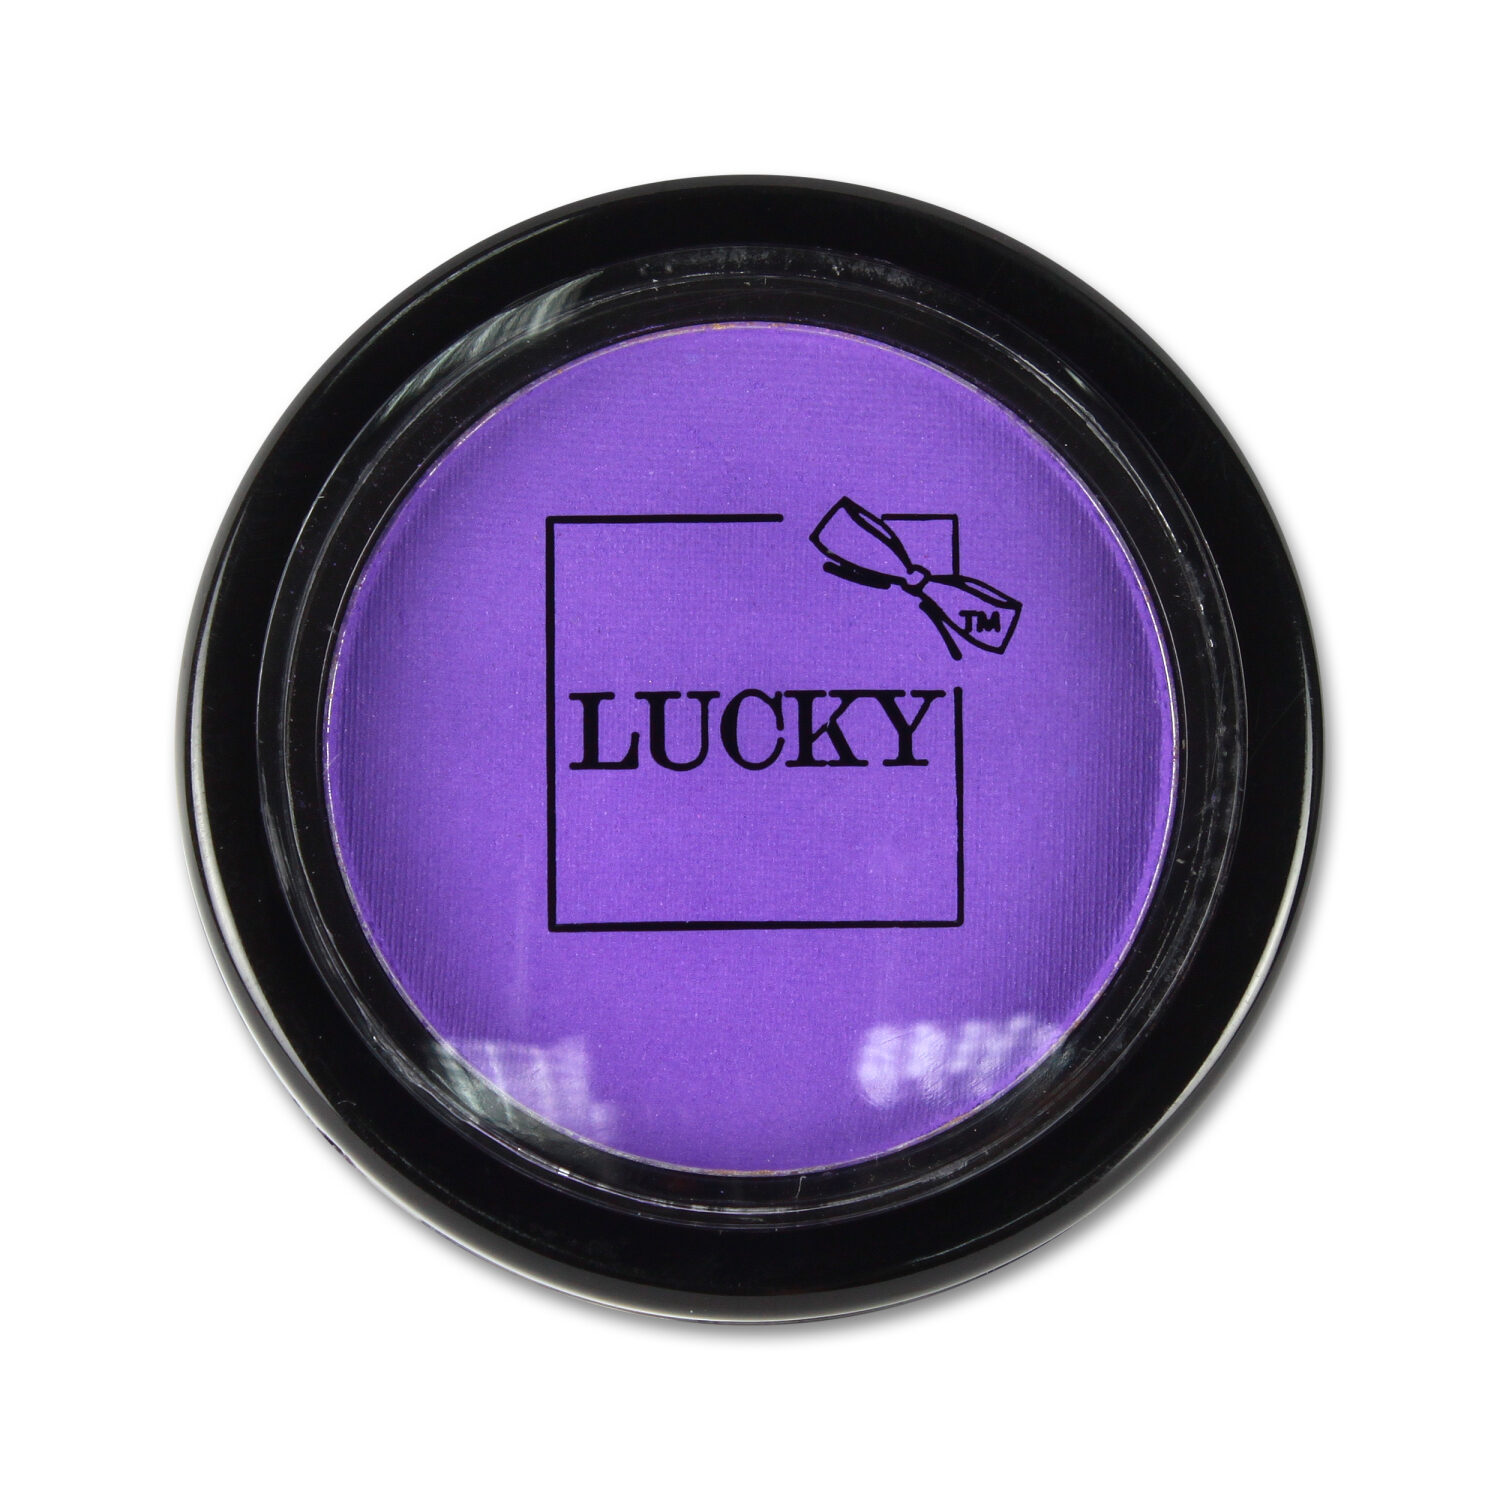 Lucky пудра для волос со спонжем, фиолетовый  